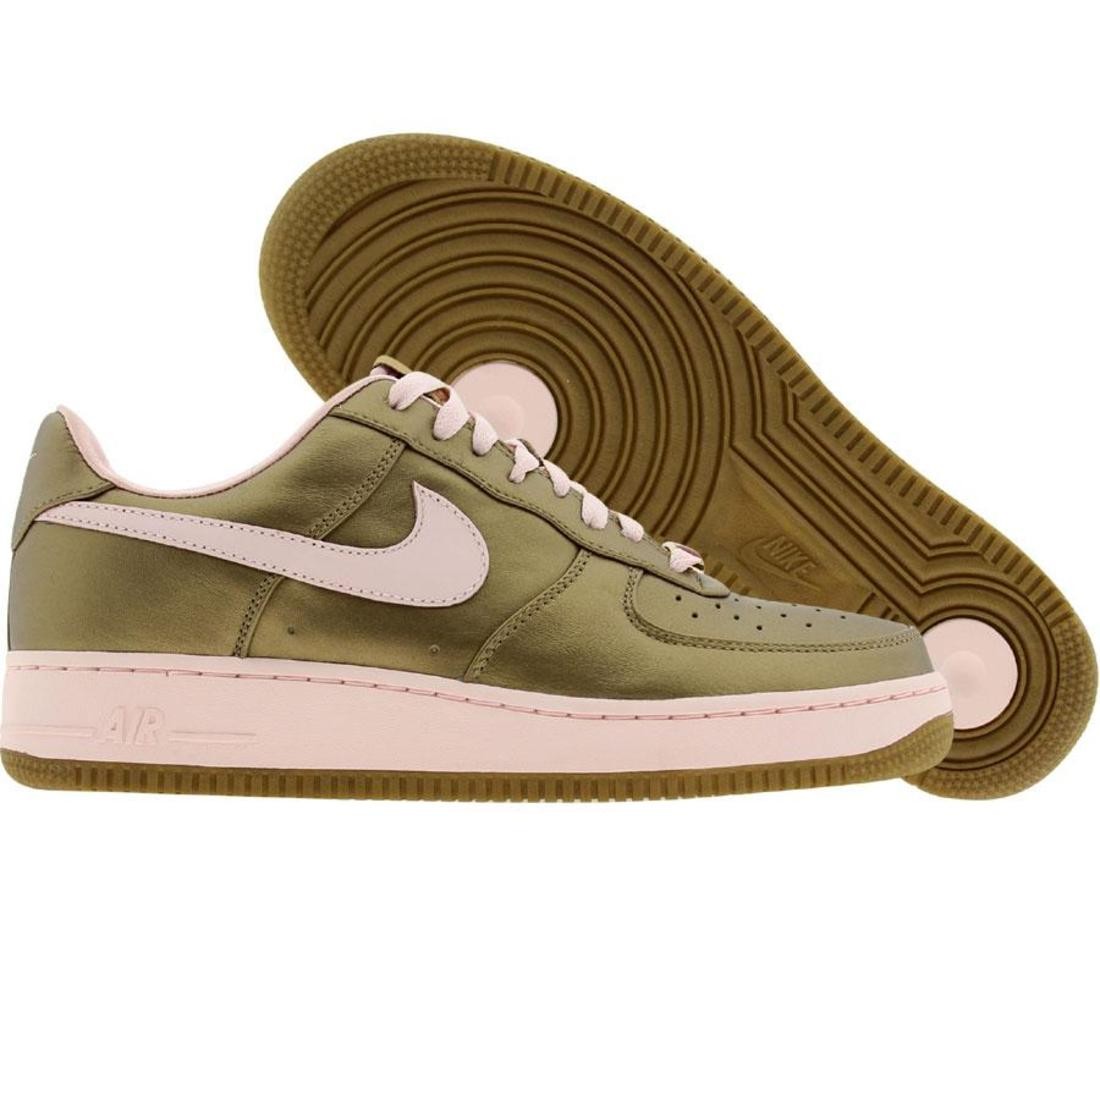 Nike Womens Air Force 1 07 Low Premium (metallic gold / aluminum pink)